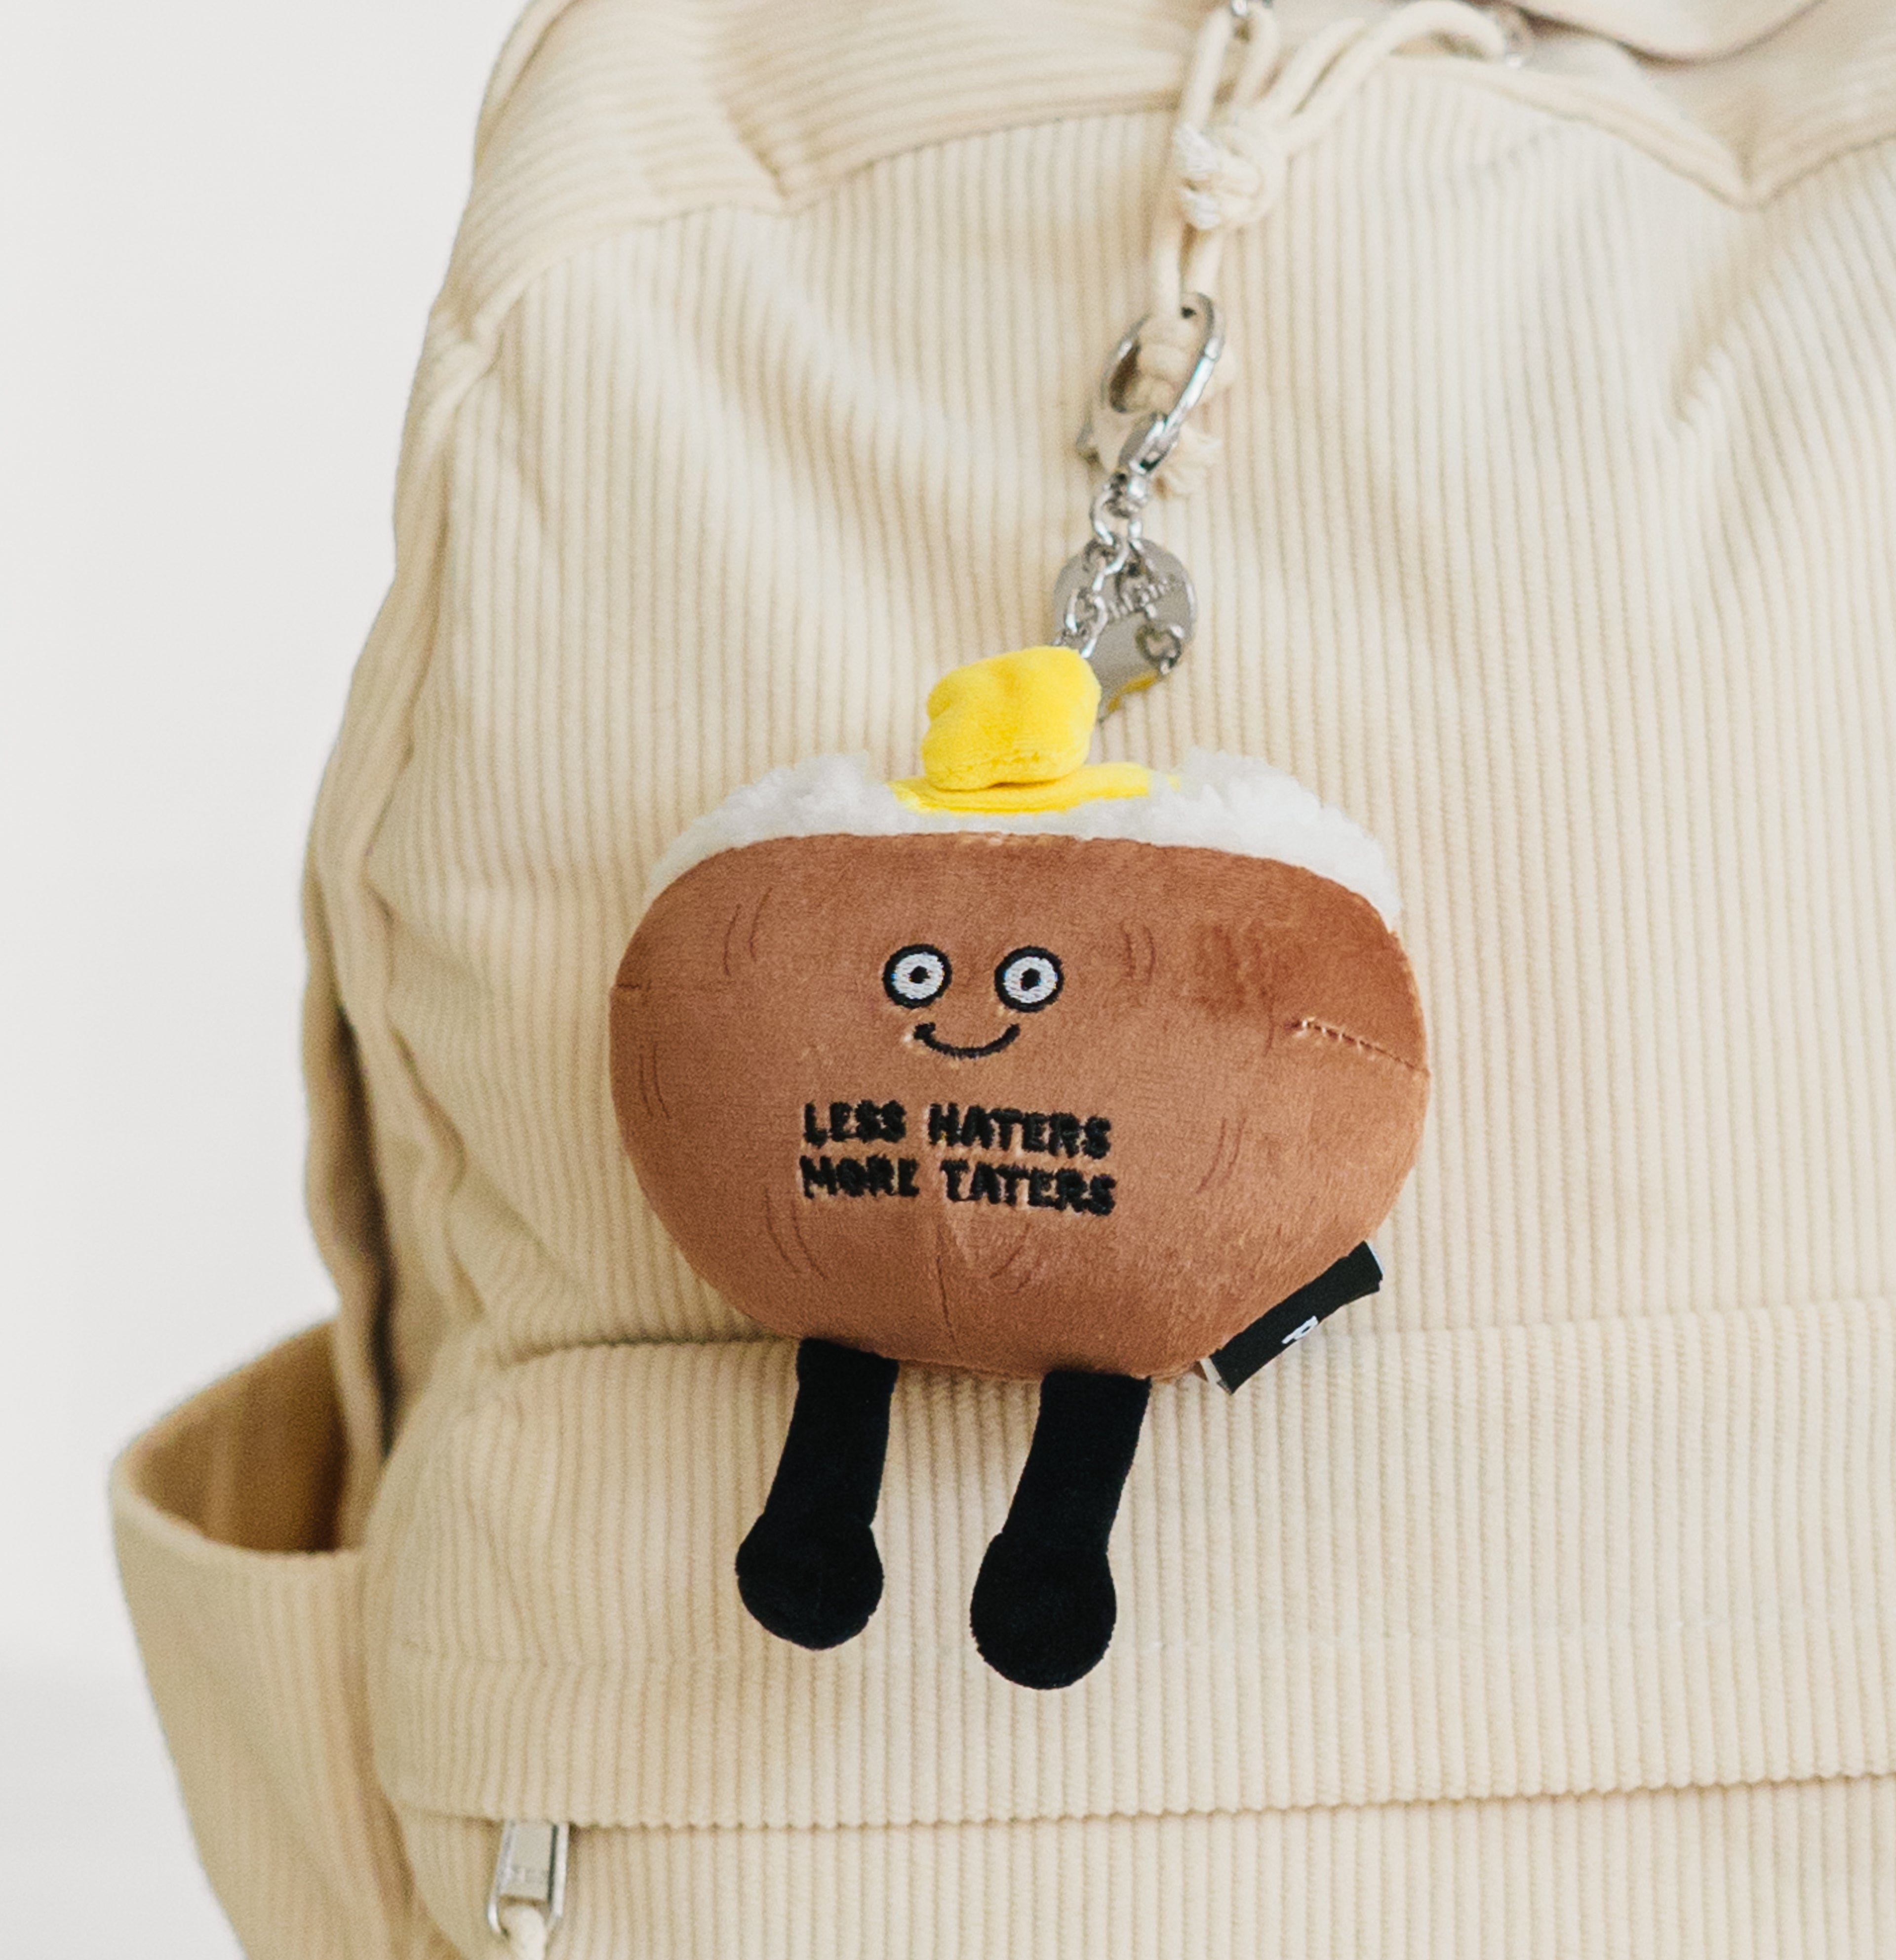 Less Haters More Taters Potato Plush Bag Charm – Punchkins LLC